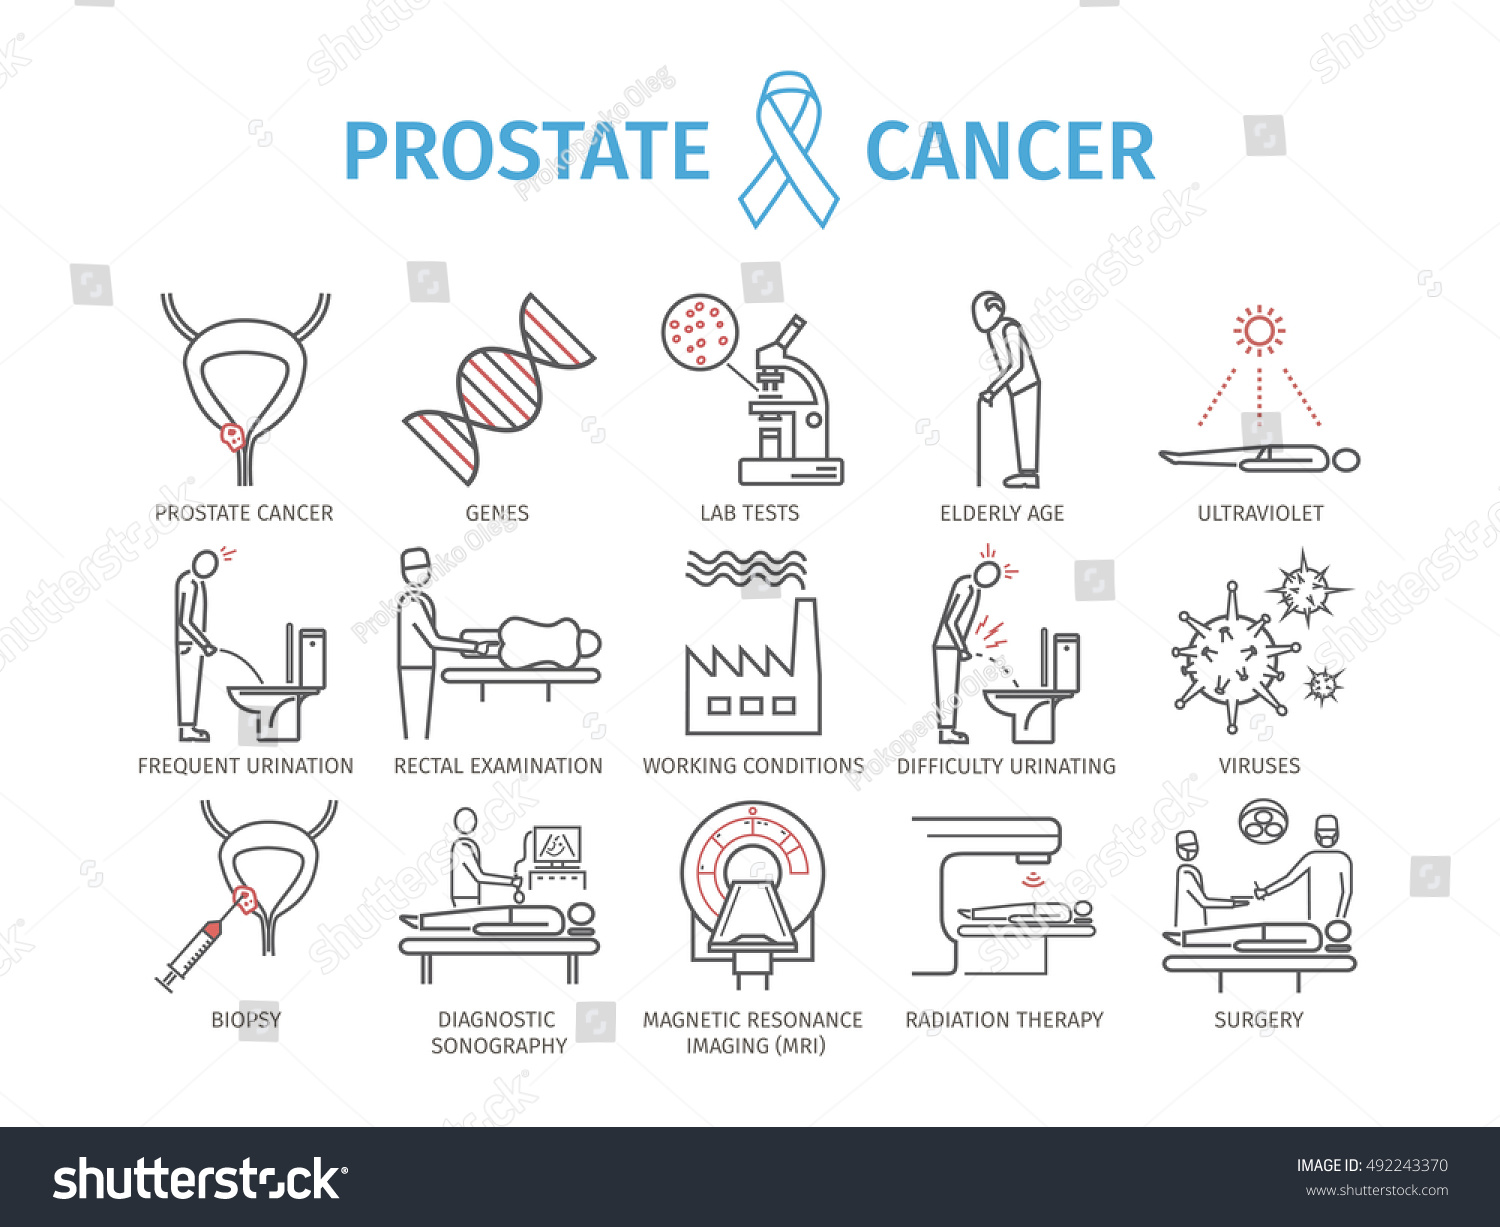 Prostate Cancer Symptoms Elderly / I Have High Psa Levels How Do I Find ...